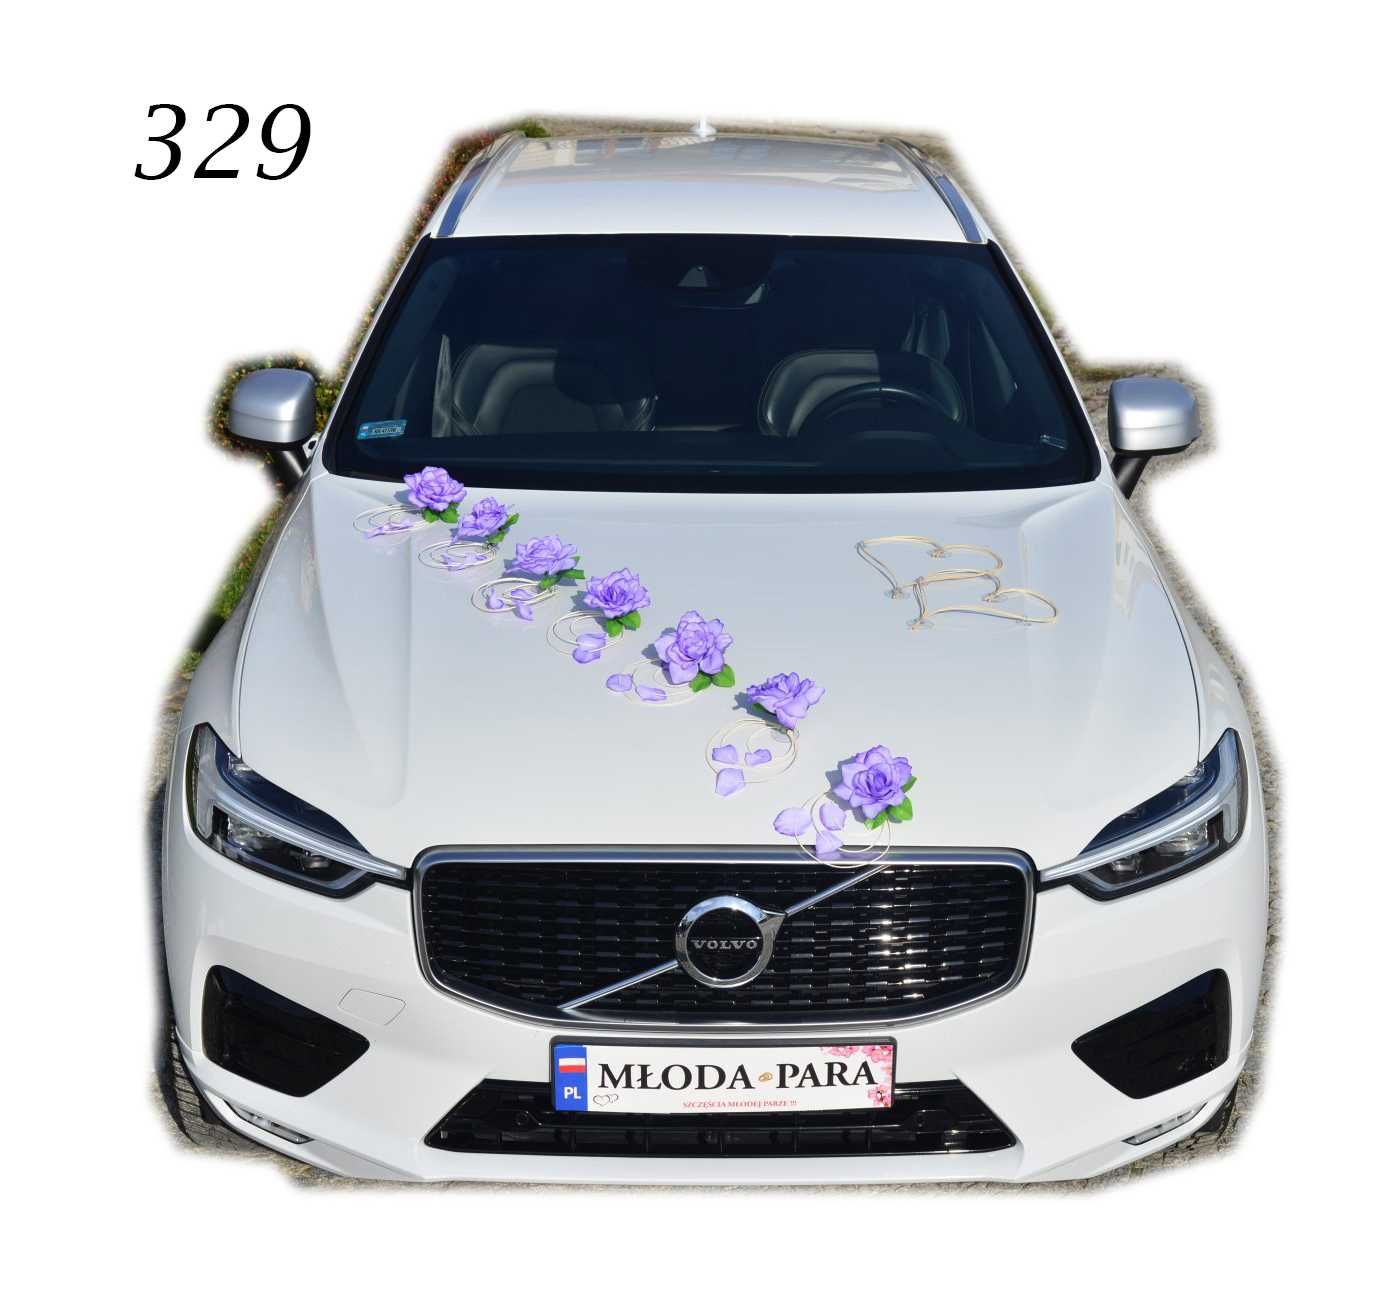 Dekoracja ślubna samochodu ozdoba na auto do ślubu FIOLETOWA 329